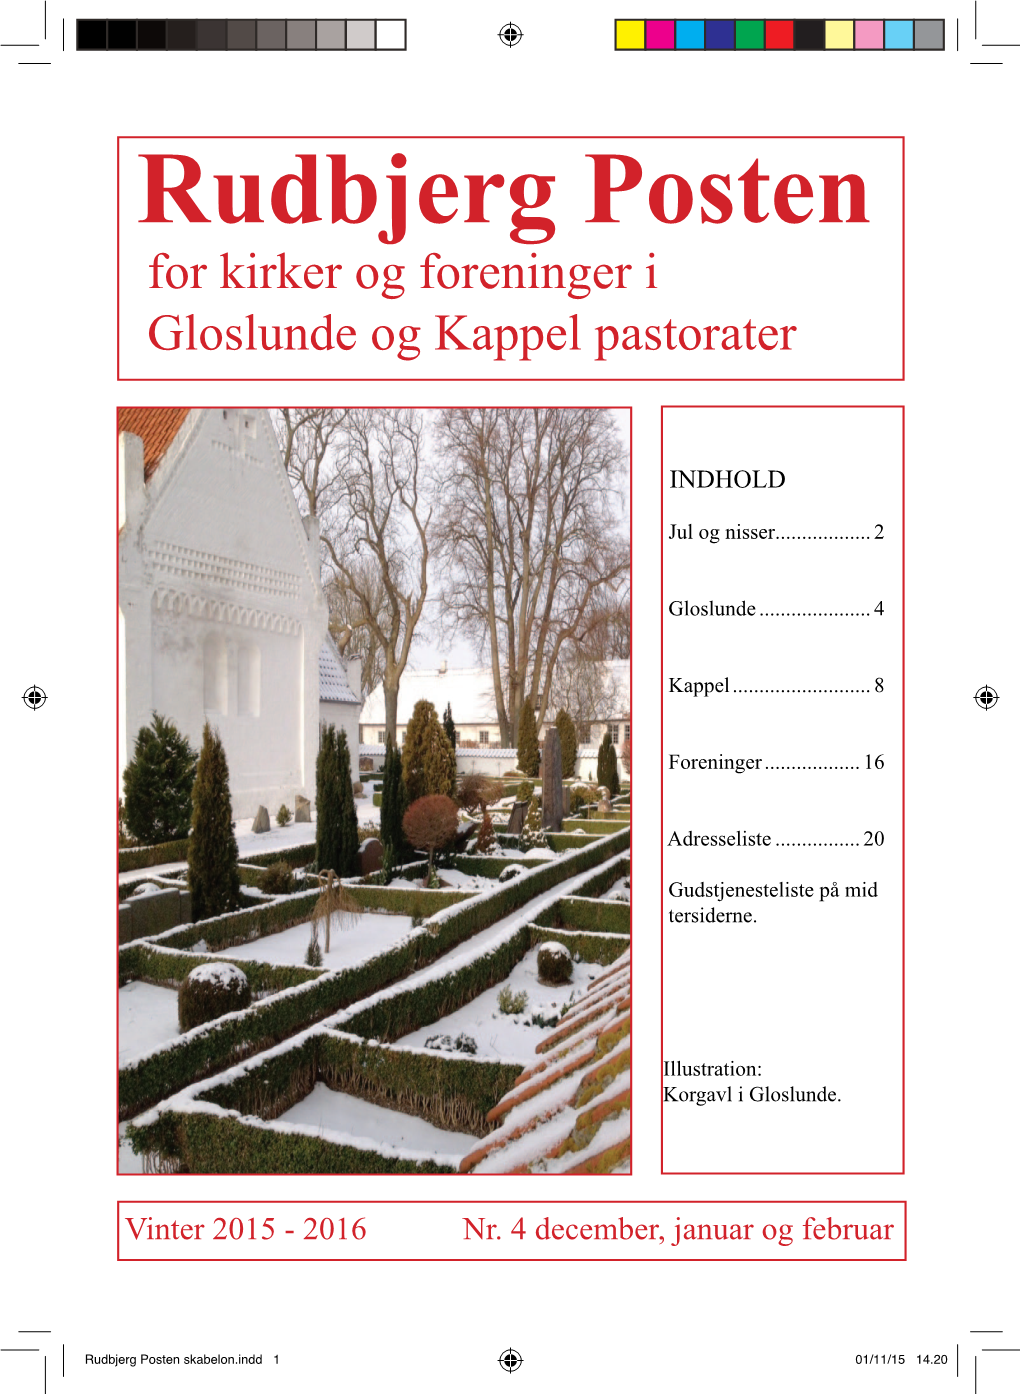 Rudbjerg Posten for Kirker Og Foreninger I Gloslunde Og Kappel Pastorater